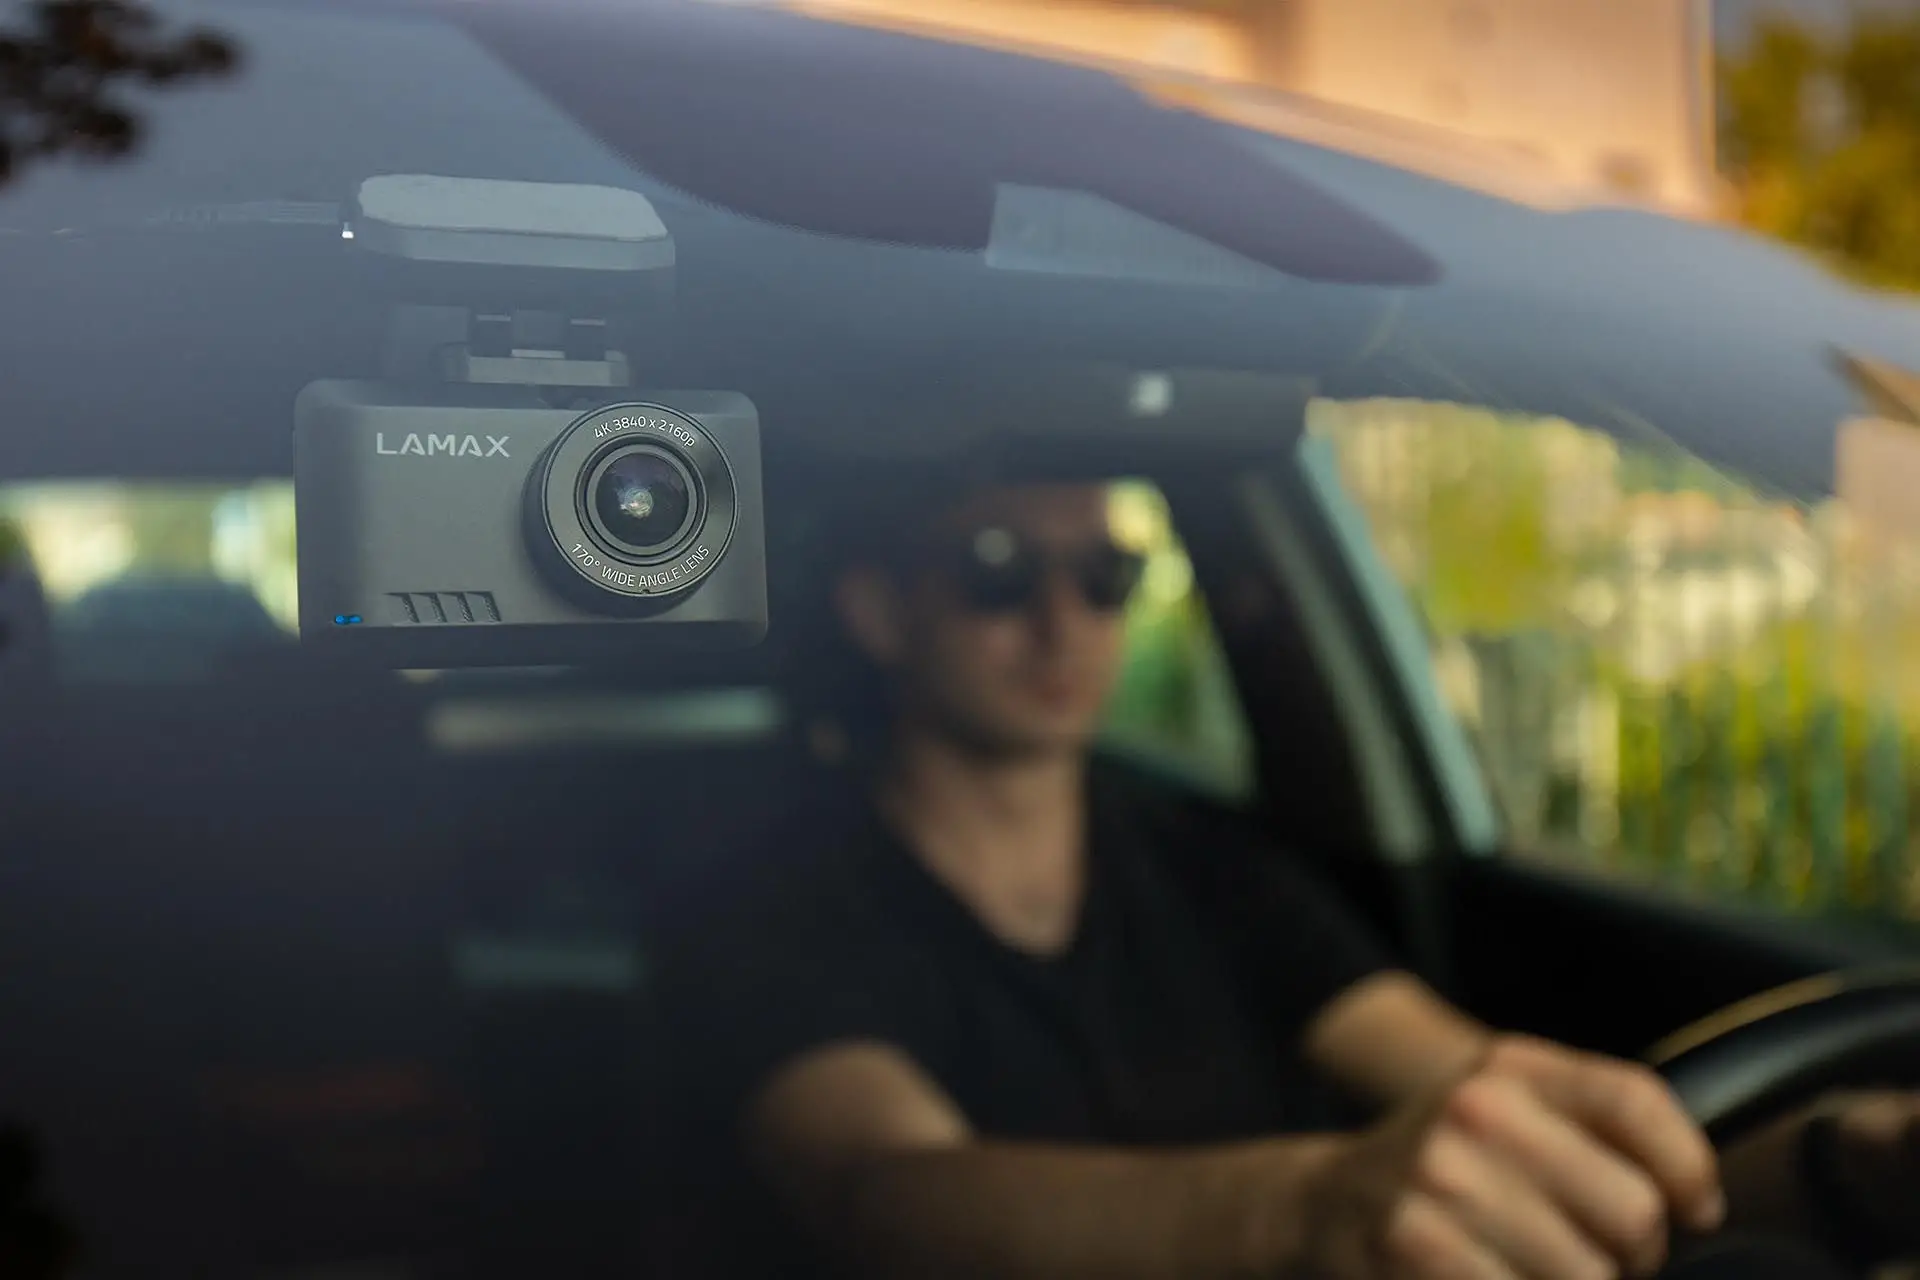 Kamera Lamax T10 natáčí obraz ve 4K @ 30 fps kvalitě ve dne v noci, kdy její širokoúhlý objektiv zabírá obraz v úhlu 170°, díky čemuž záběr pokrývá celou šíři vozovky i její blízké okolí.